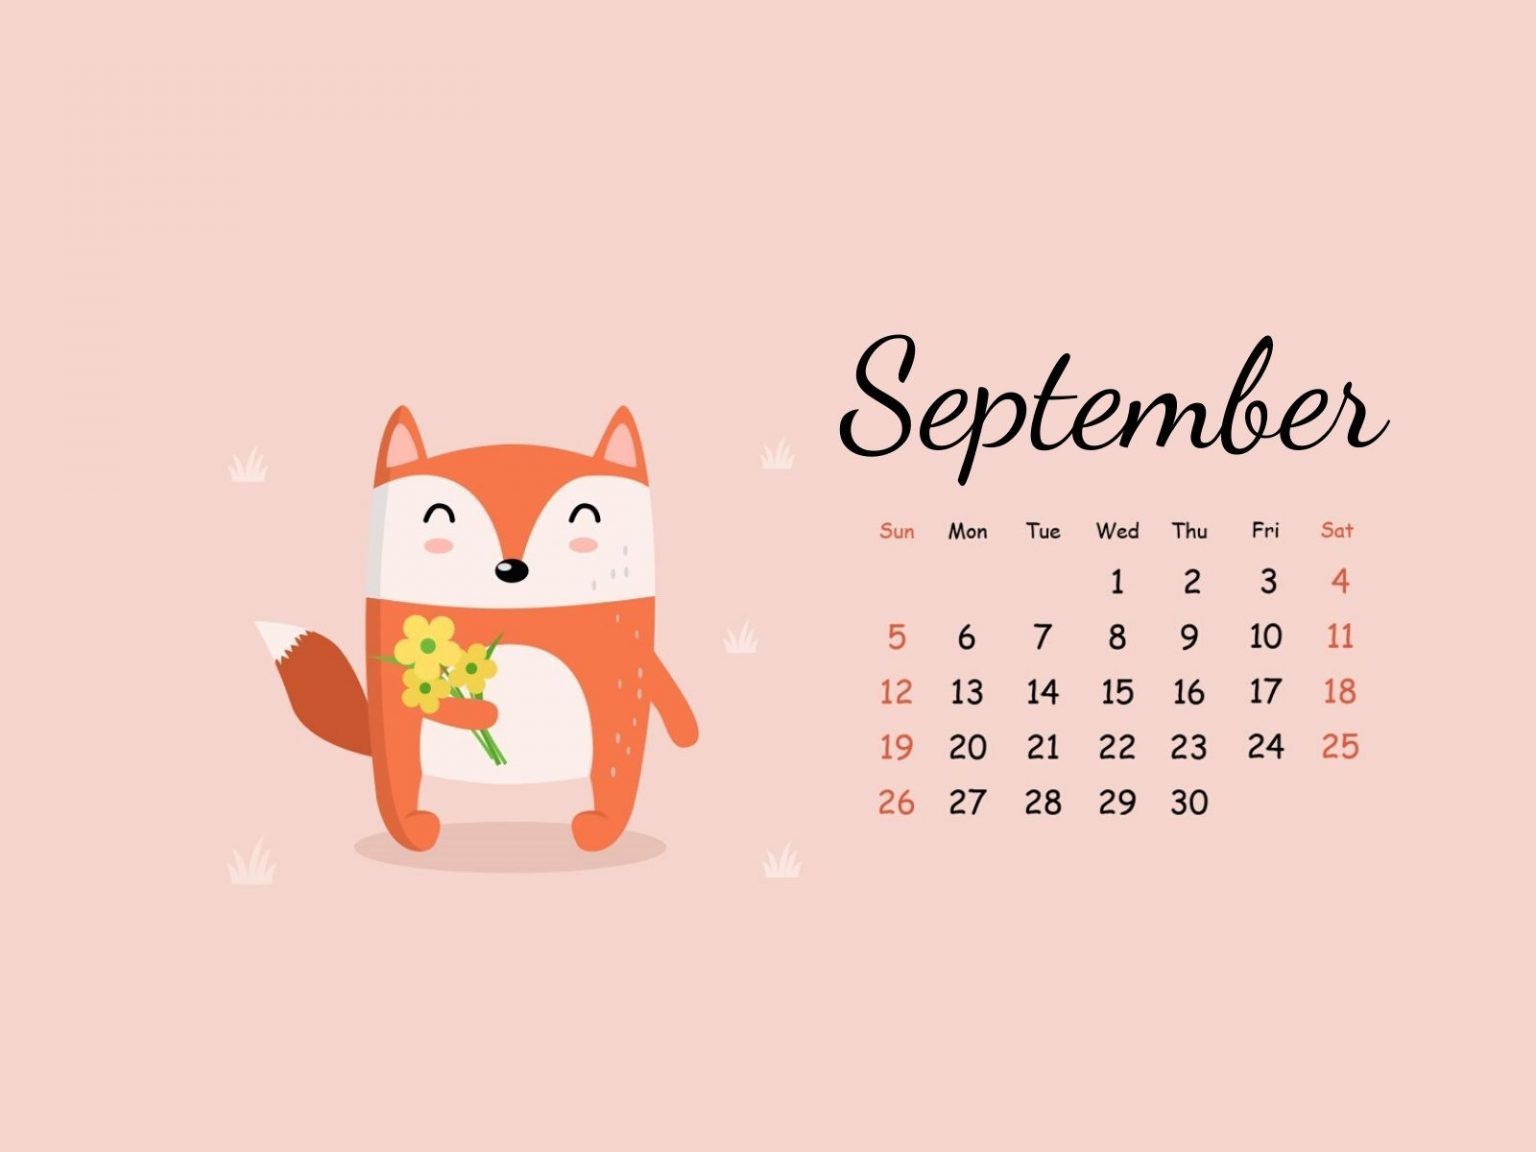 September 2021 Calendar Wallpapers Wallpaper Cave